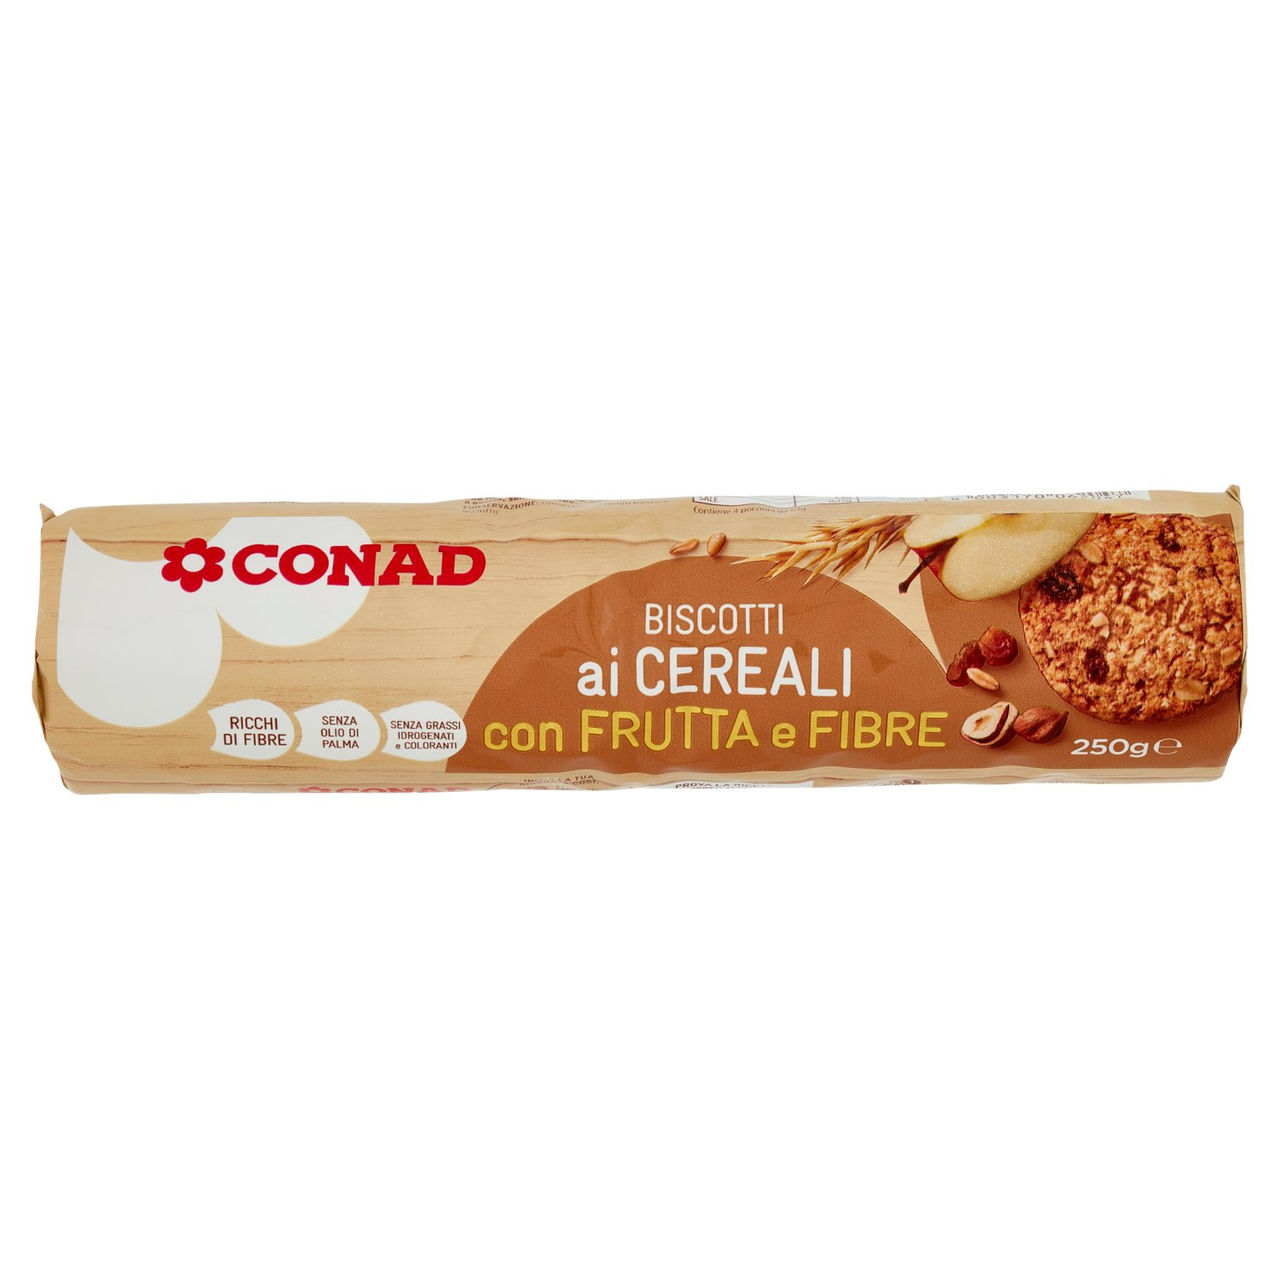 Biscotti ai cereali, frutta e fibre g 250 Conad